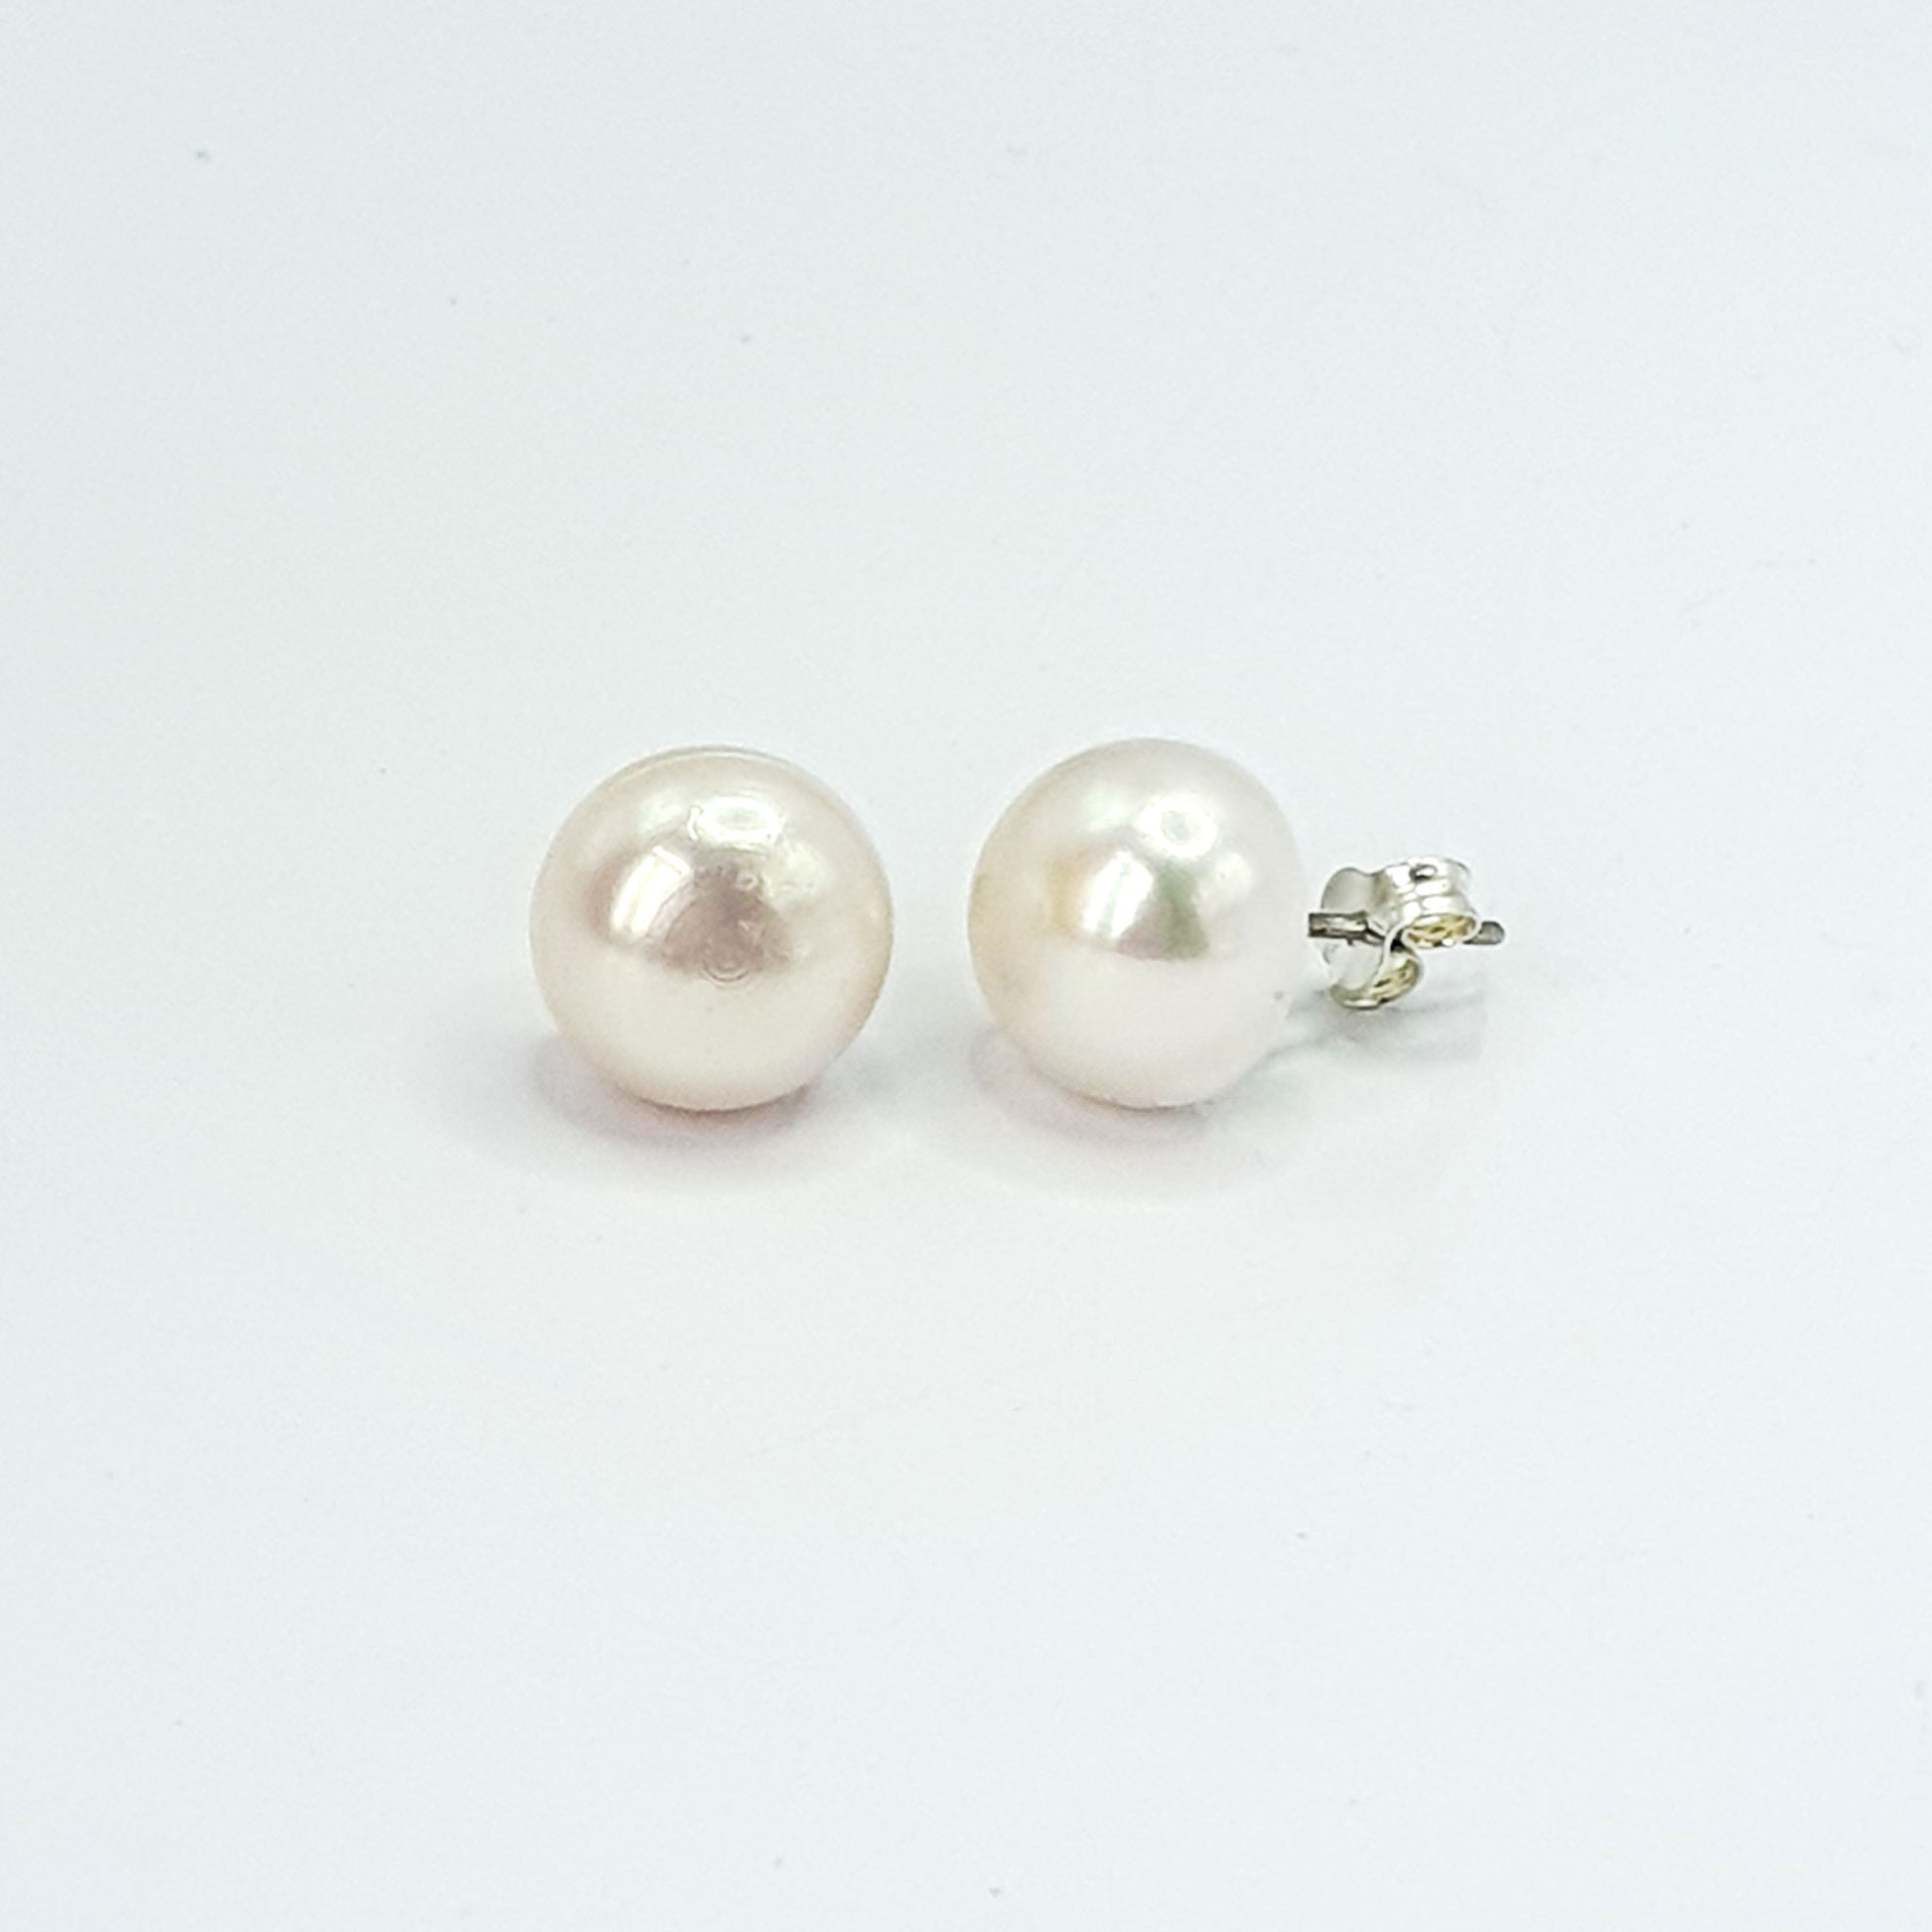 White freshwater pearl stud earrings